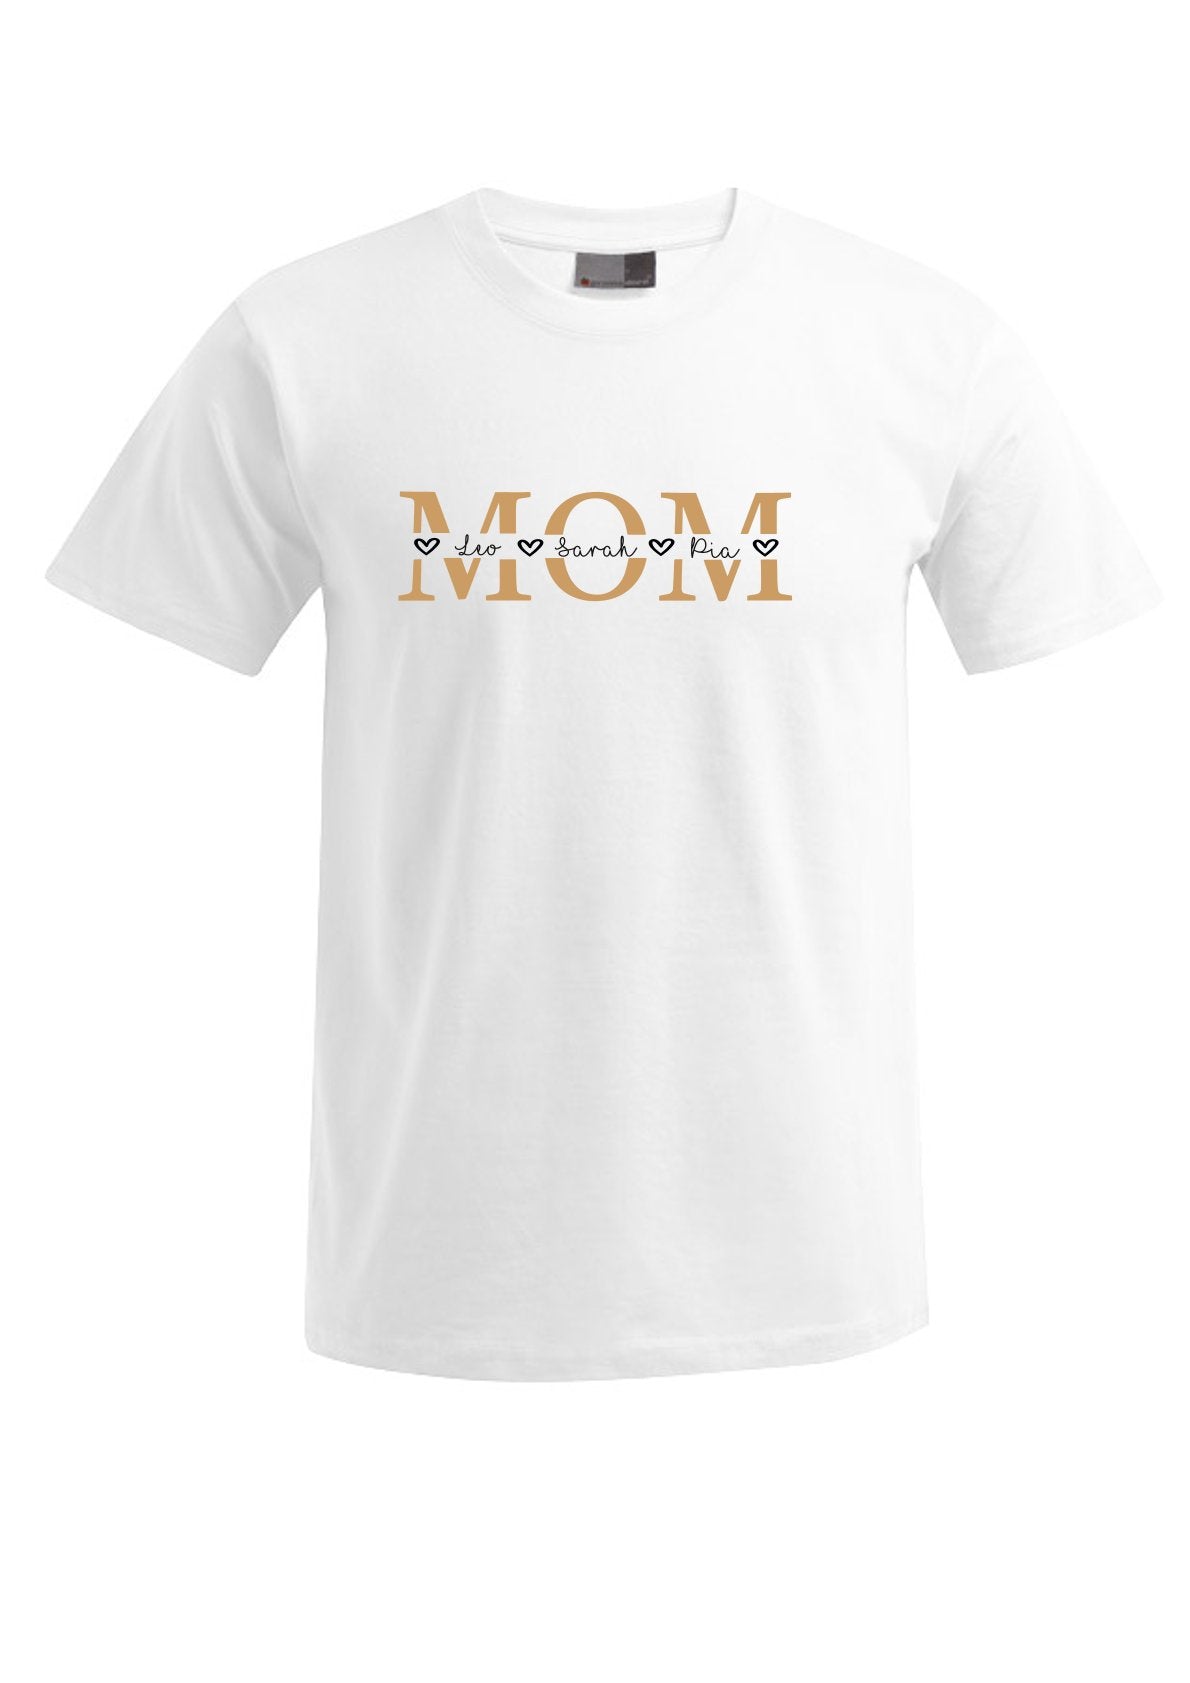 T-Shirt MOM - Herzen geteilt gold